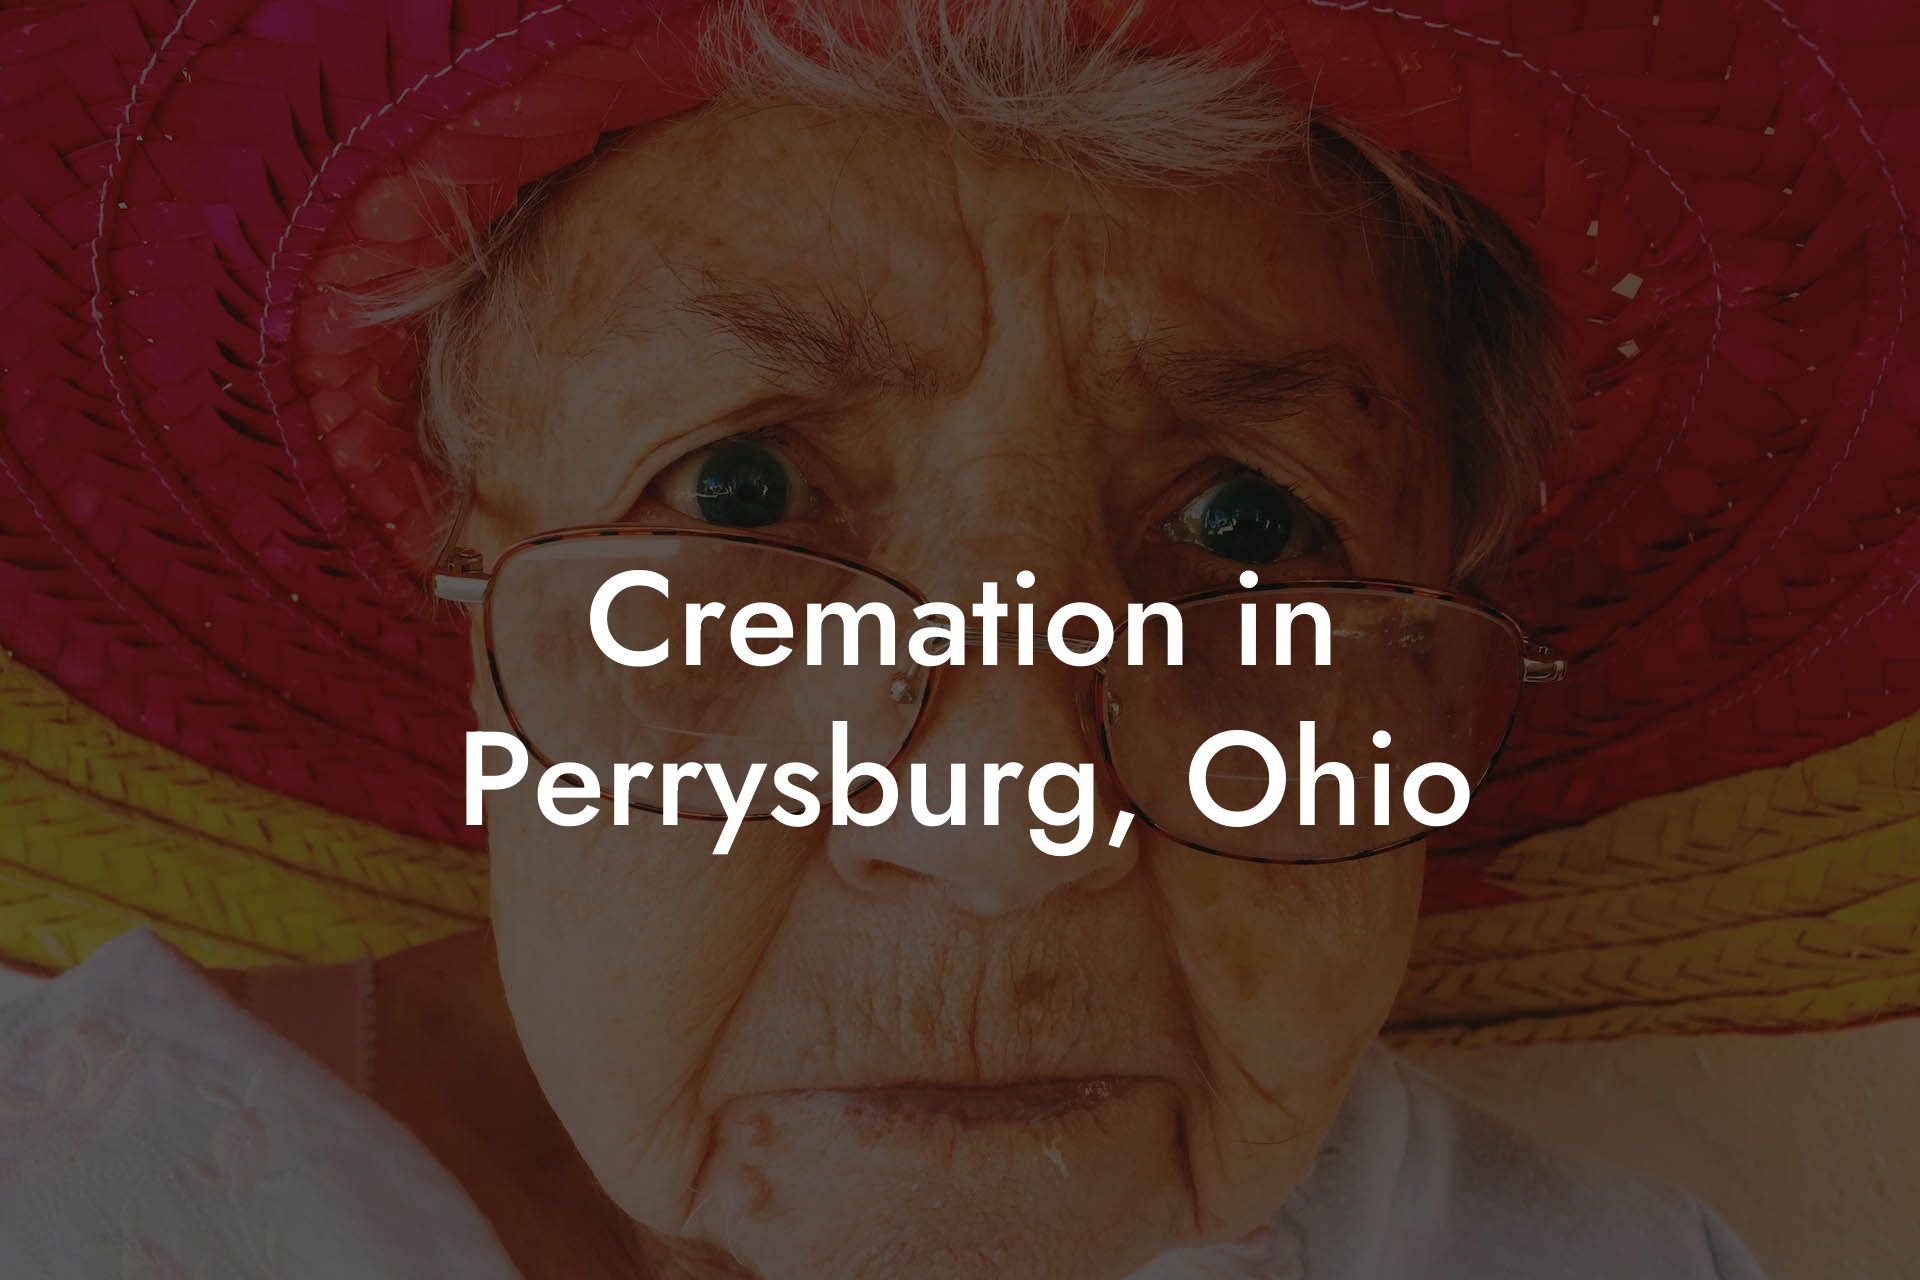 Cremation in Perrysburg, Ohio